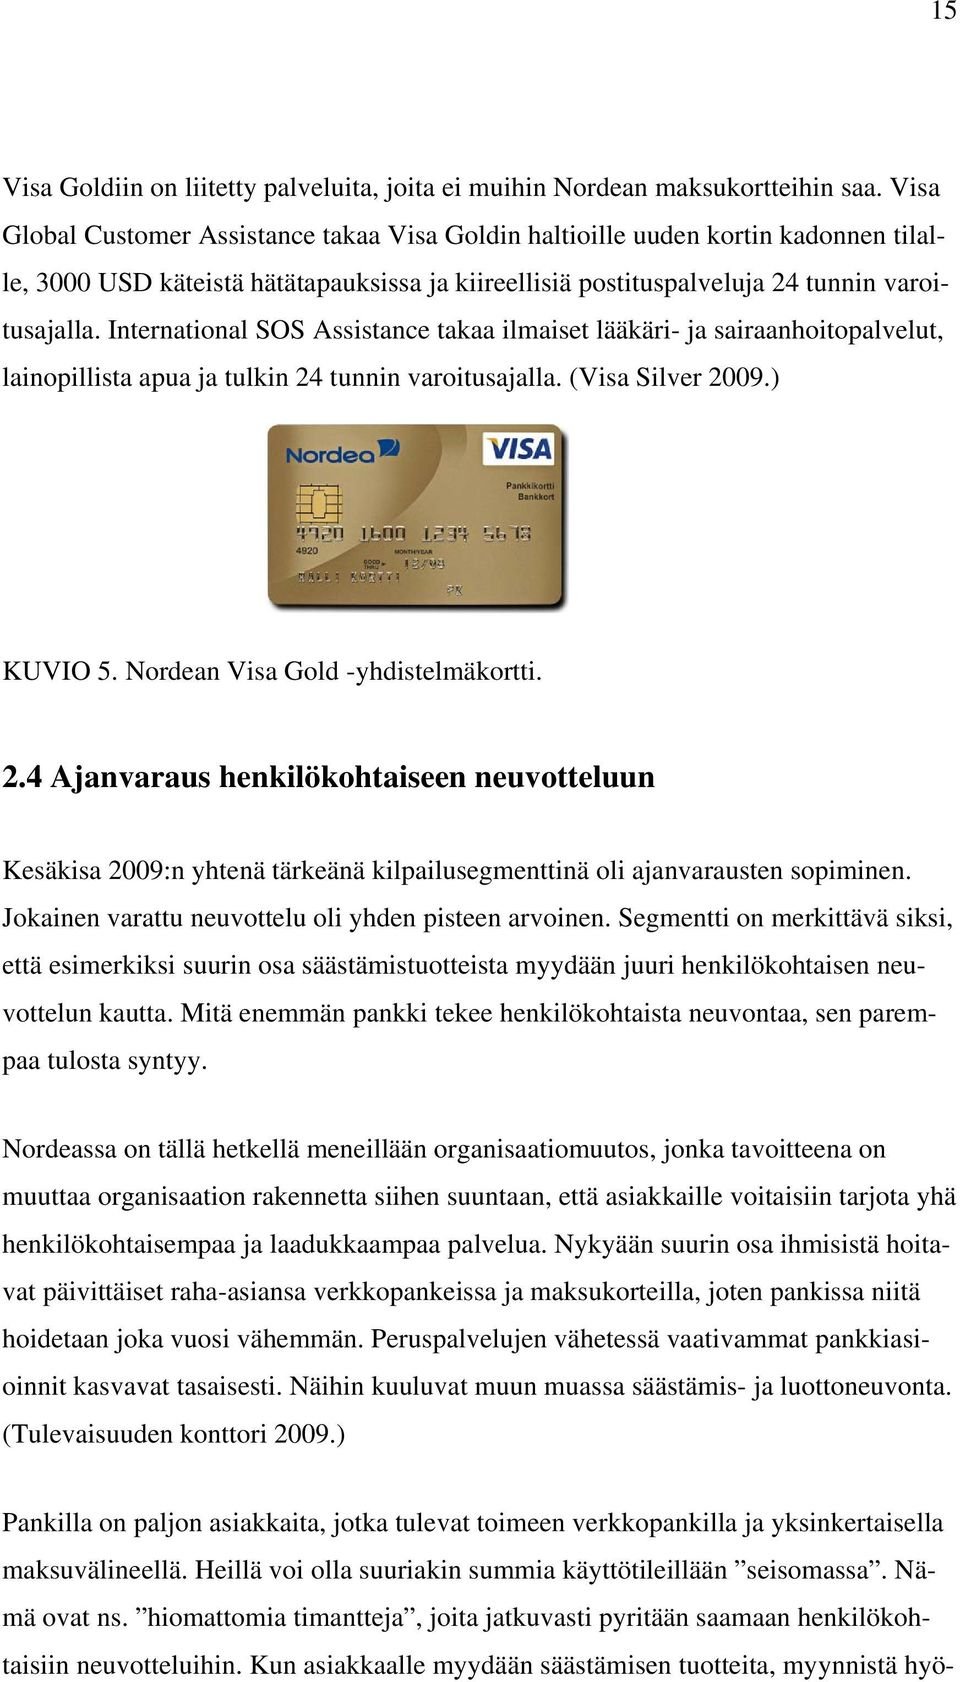 International SOS Assistance takaa ilmaiset lääkäri- ja sairaanhoitopalvelut, lainopillista apua ja tulkin 24 tunnin varoitusajalla. (Visa Silver 2009.) KUVIO 5. Nordean Visa Gold -yhdistelmäkortti.